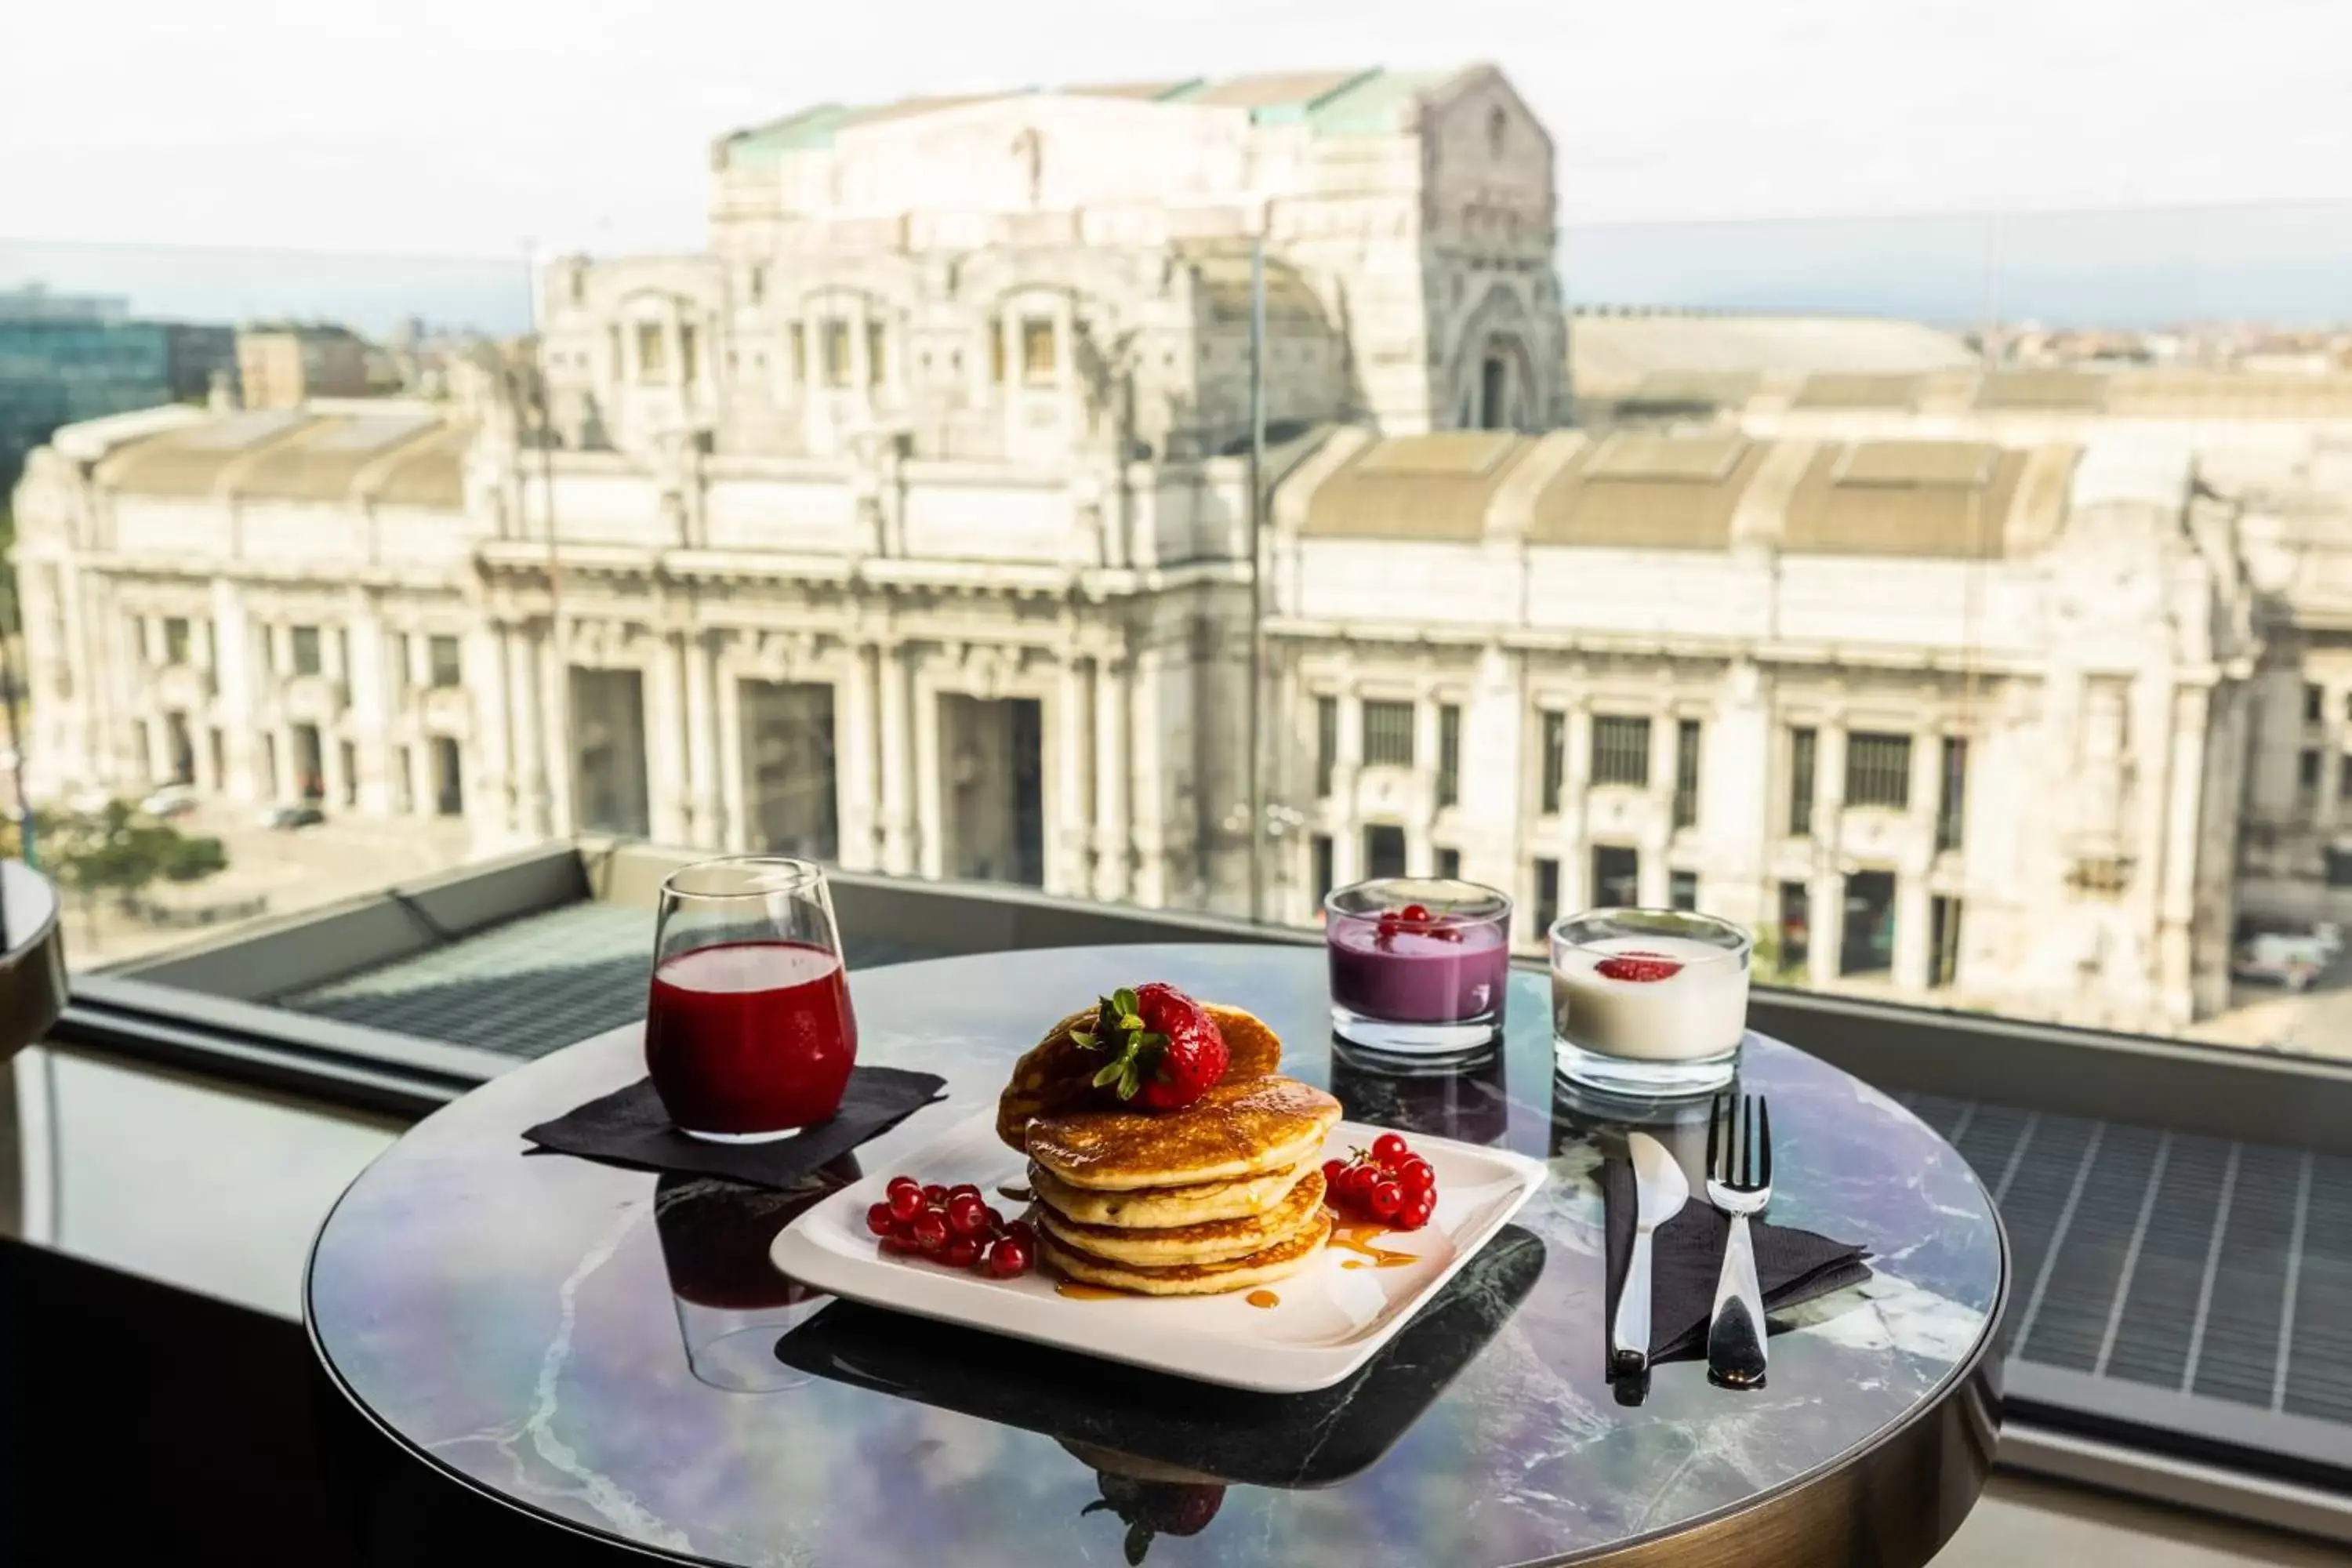 Breakfast in HD8 Hotel Milano